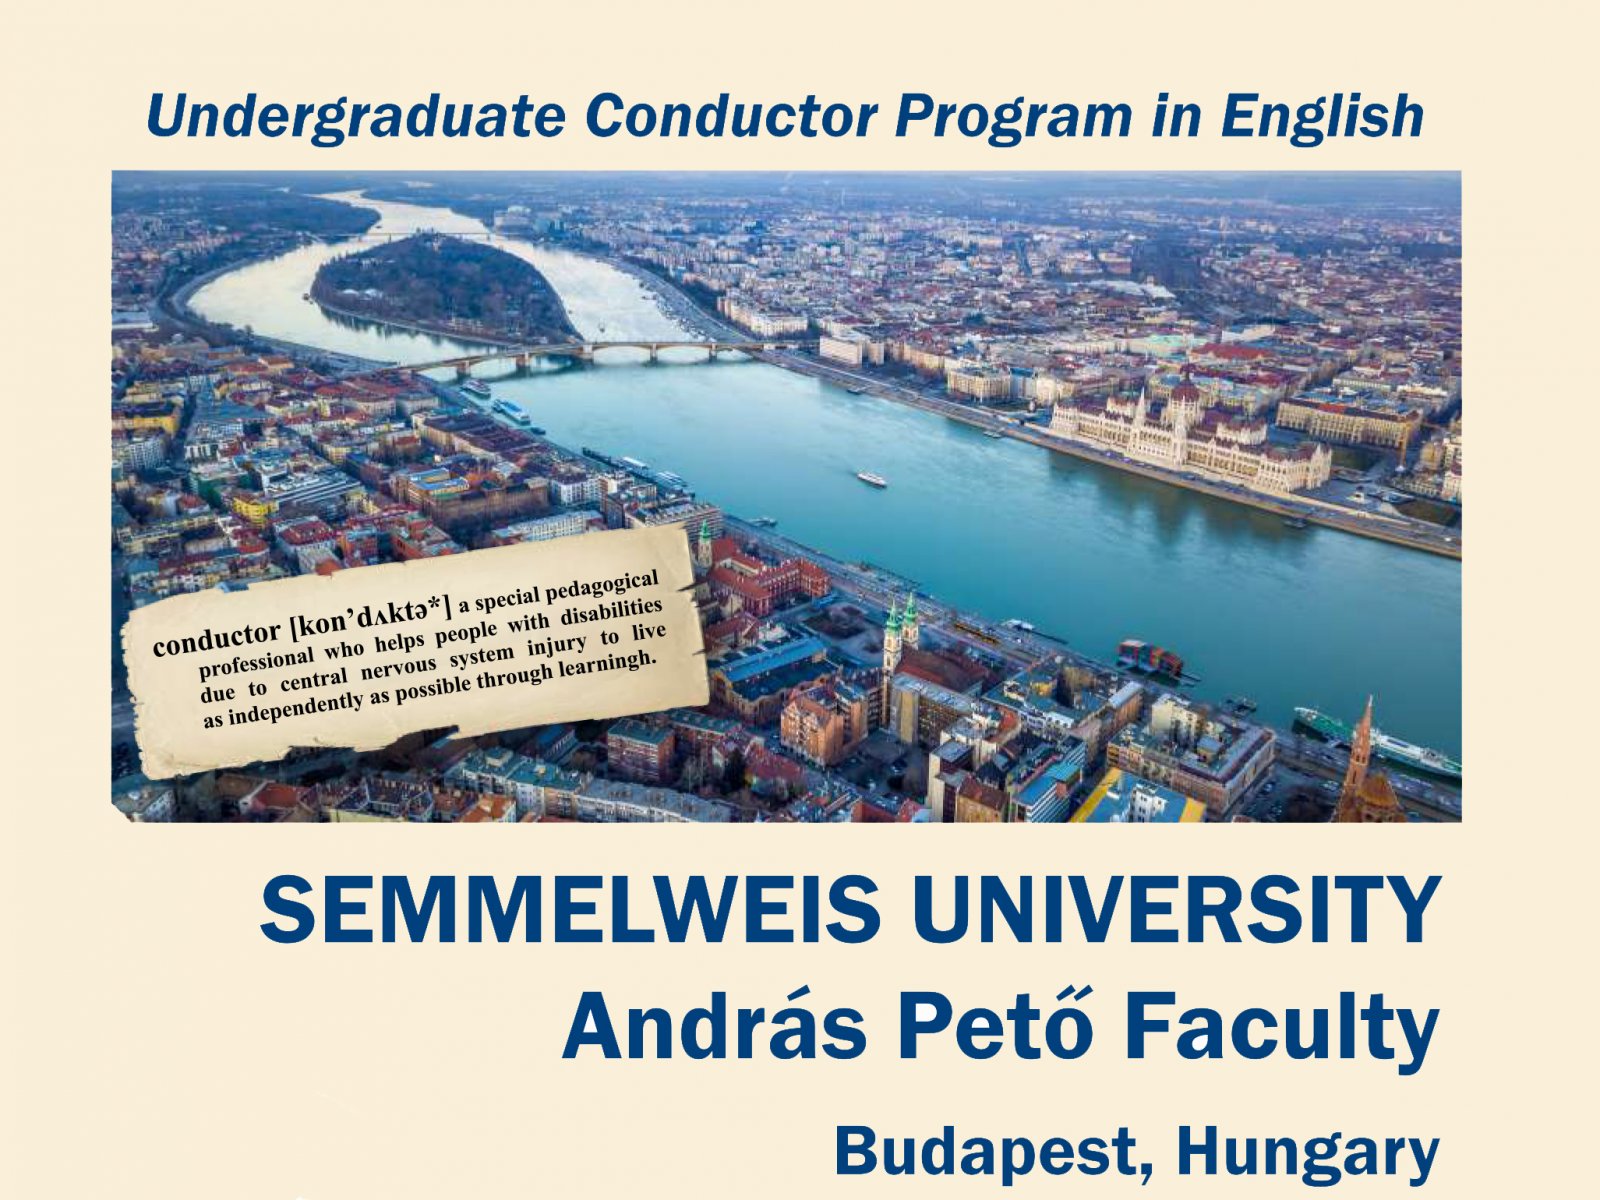 Венгерский университет Семмелвейс приглашает на обучение по программе «Кондуктолог»